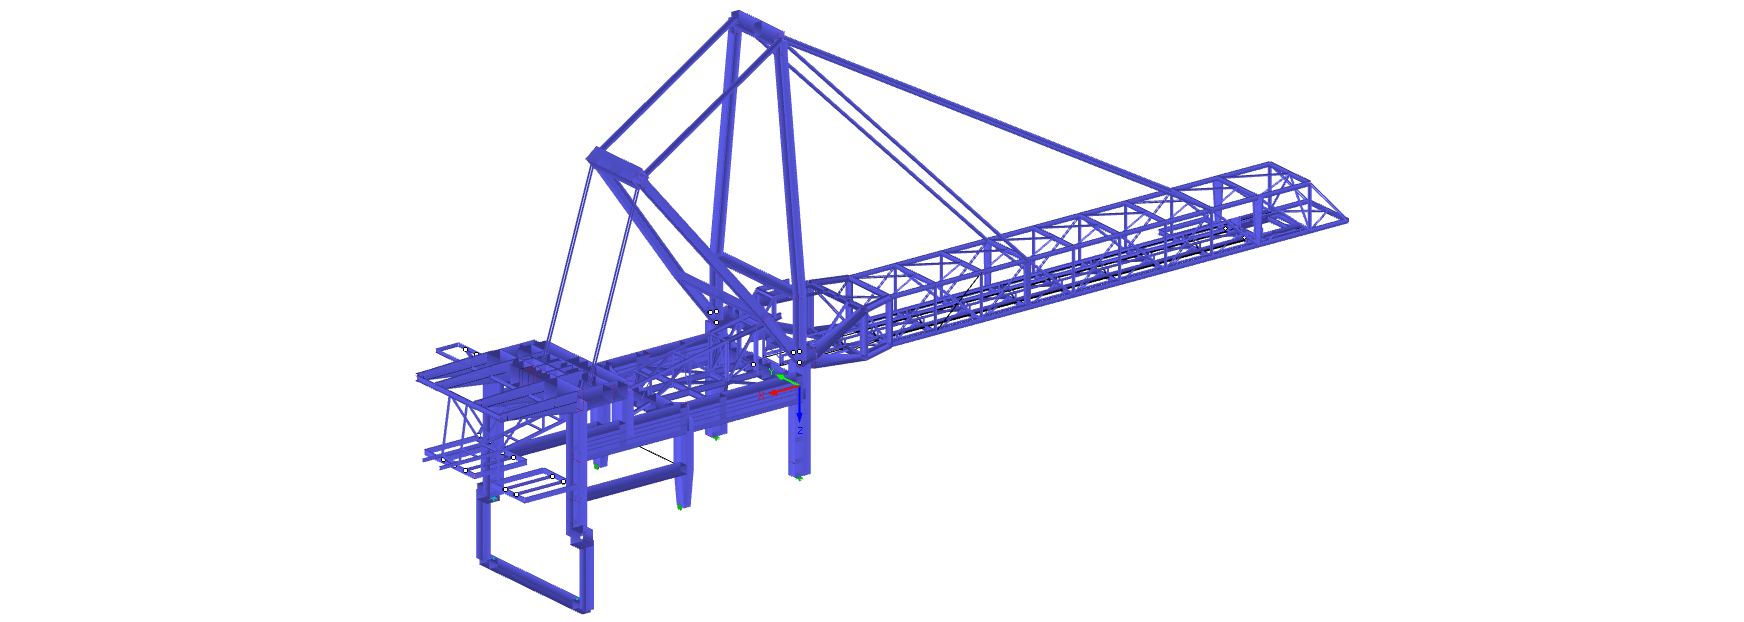 Crane design